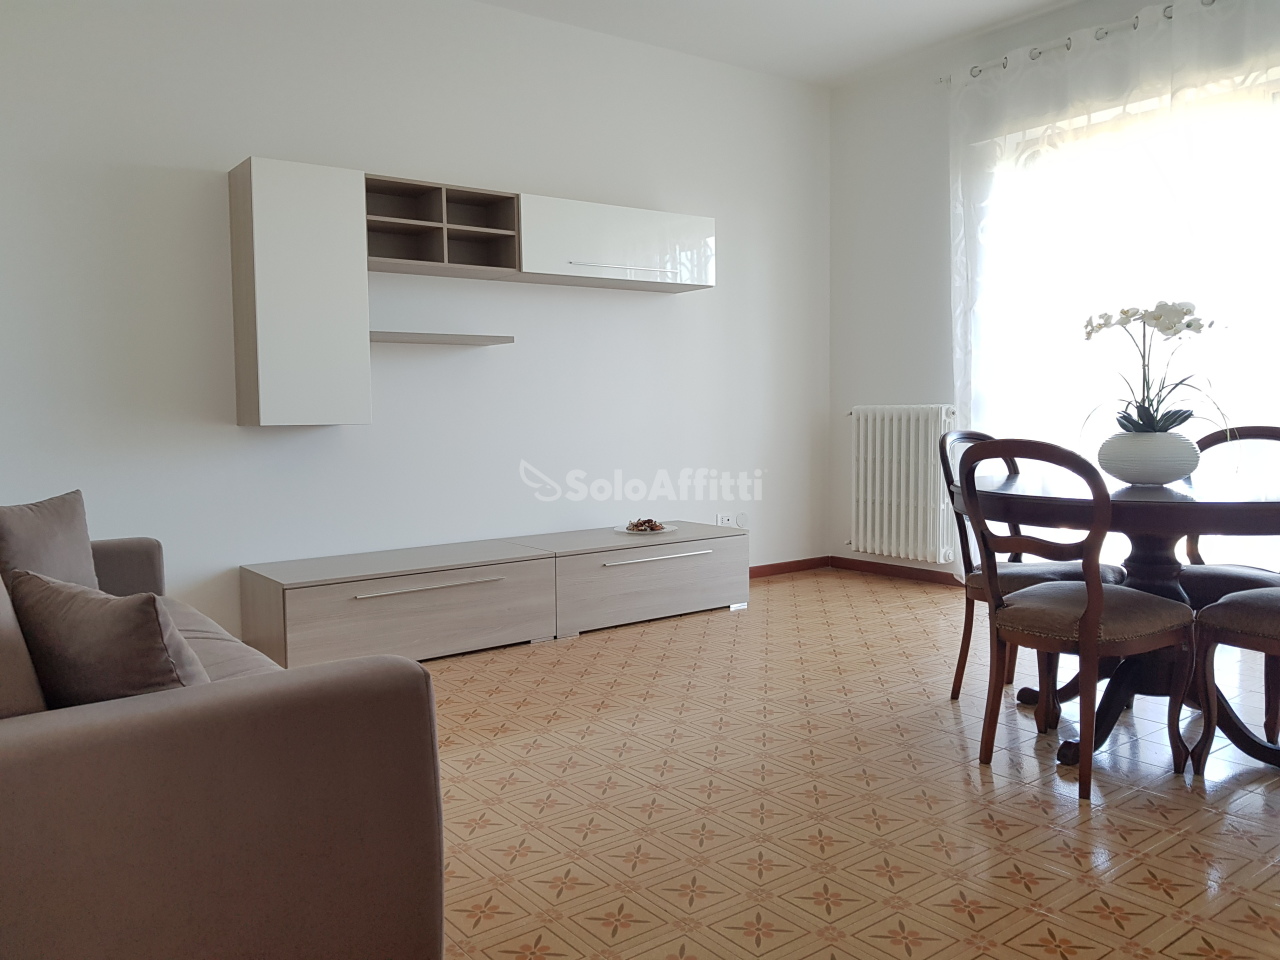 Appartamento in affitto a Montesilvano, 4 locali, prezzo € 550 | PortaleAgenzieImmobiliari.it